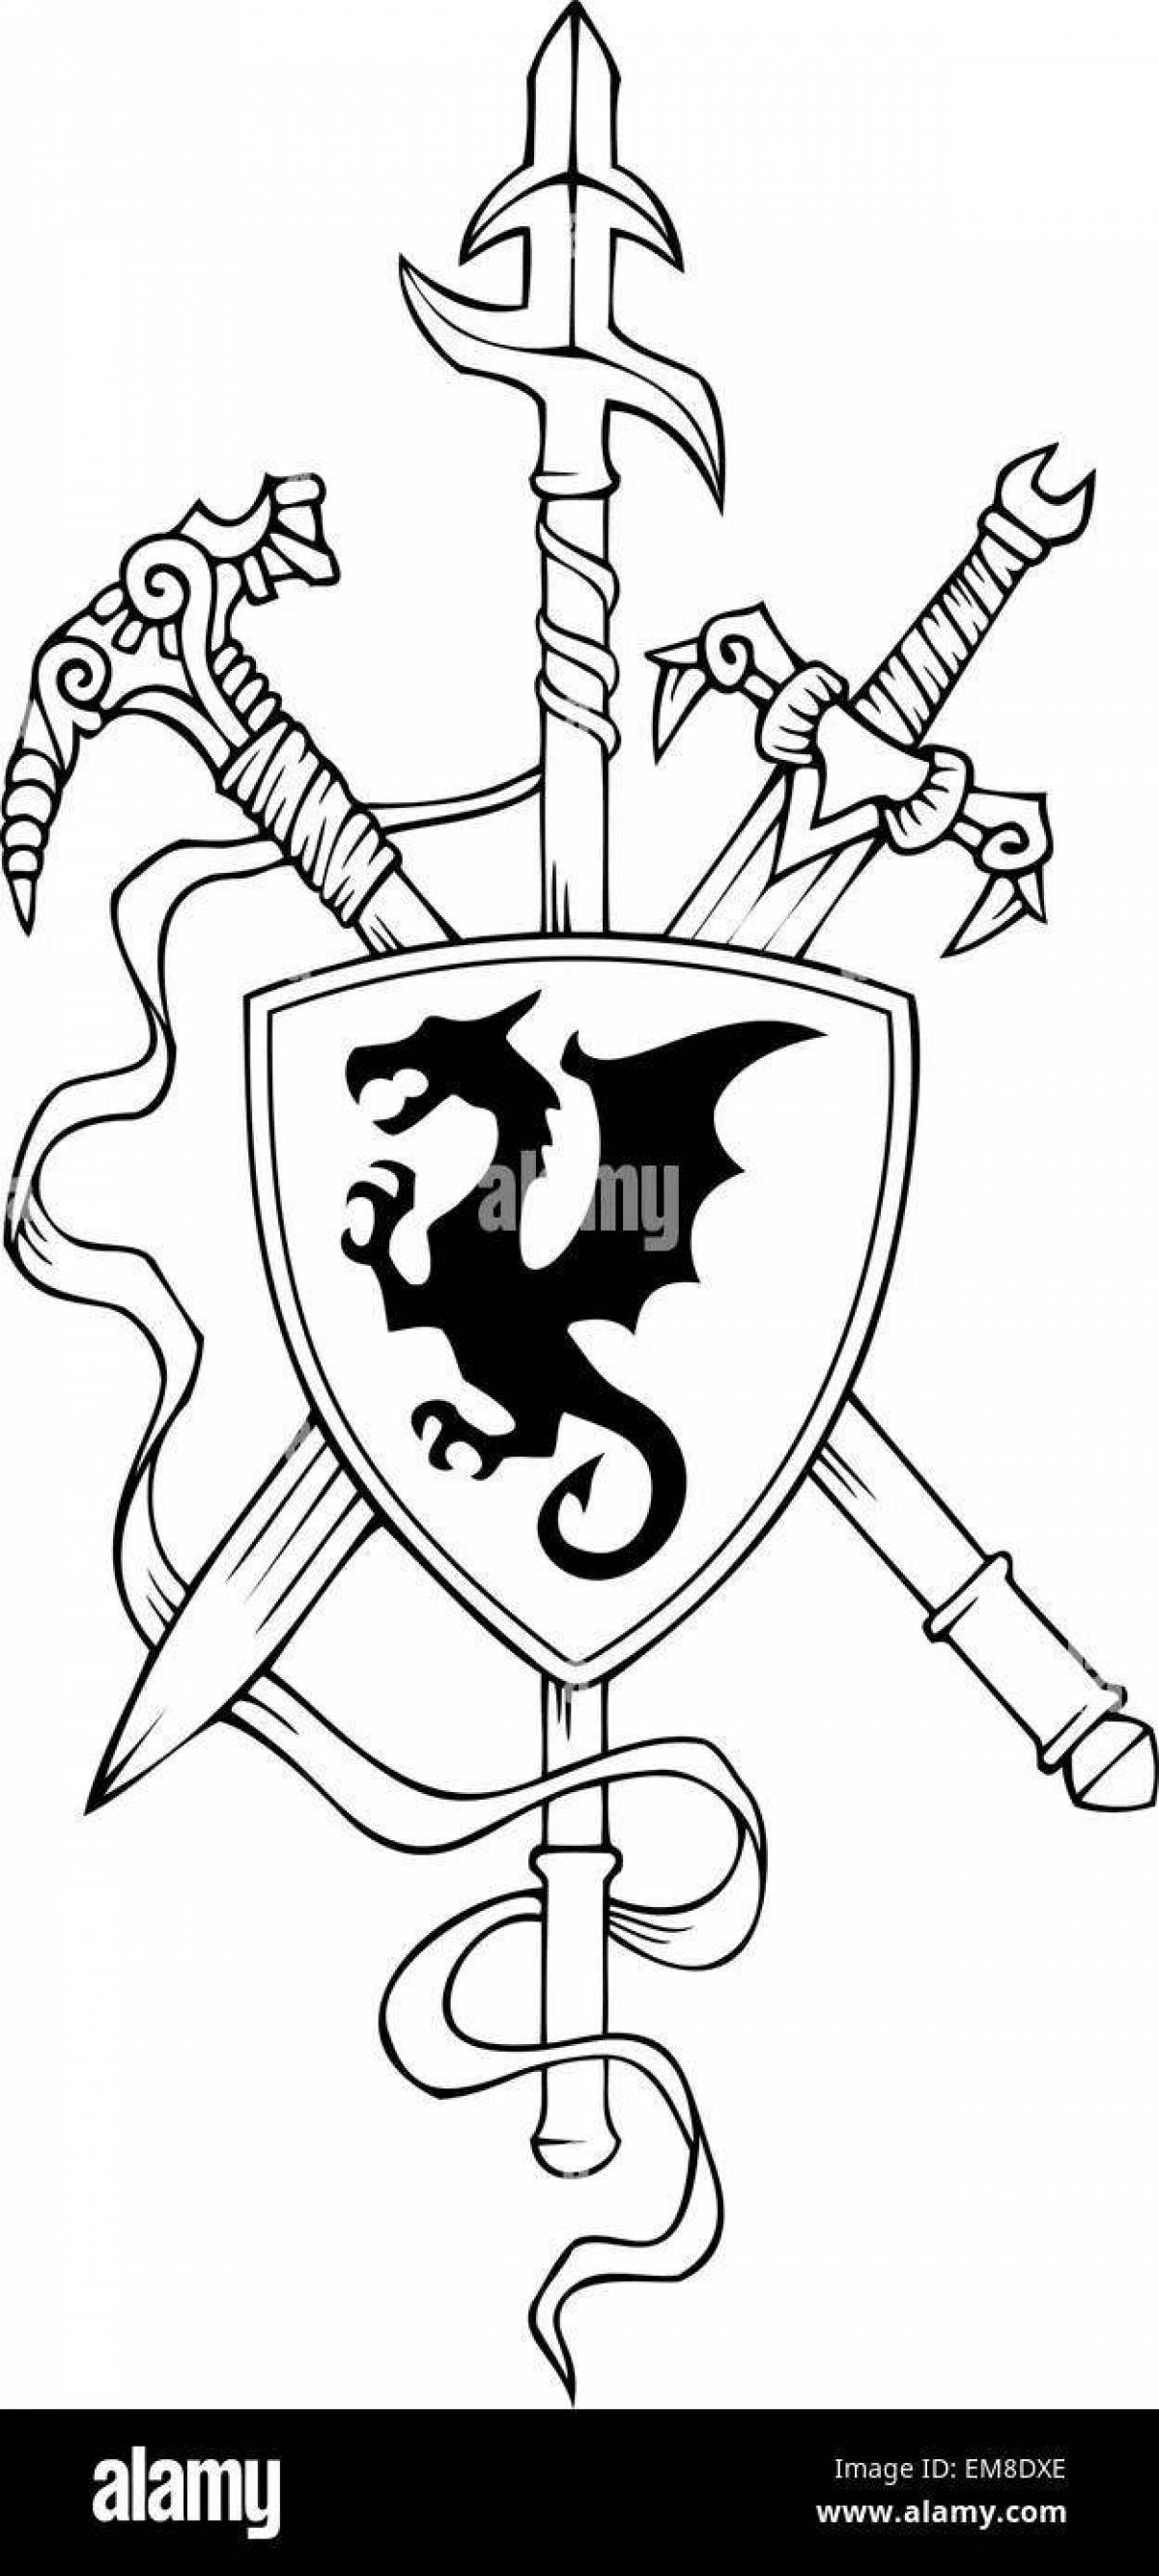 Богато украшенная раскраска рыцарский герб